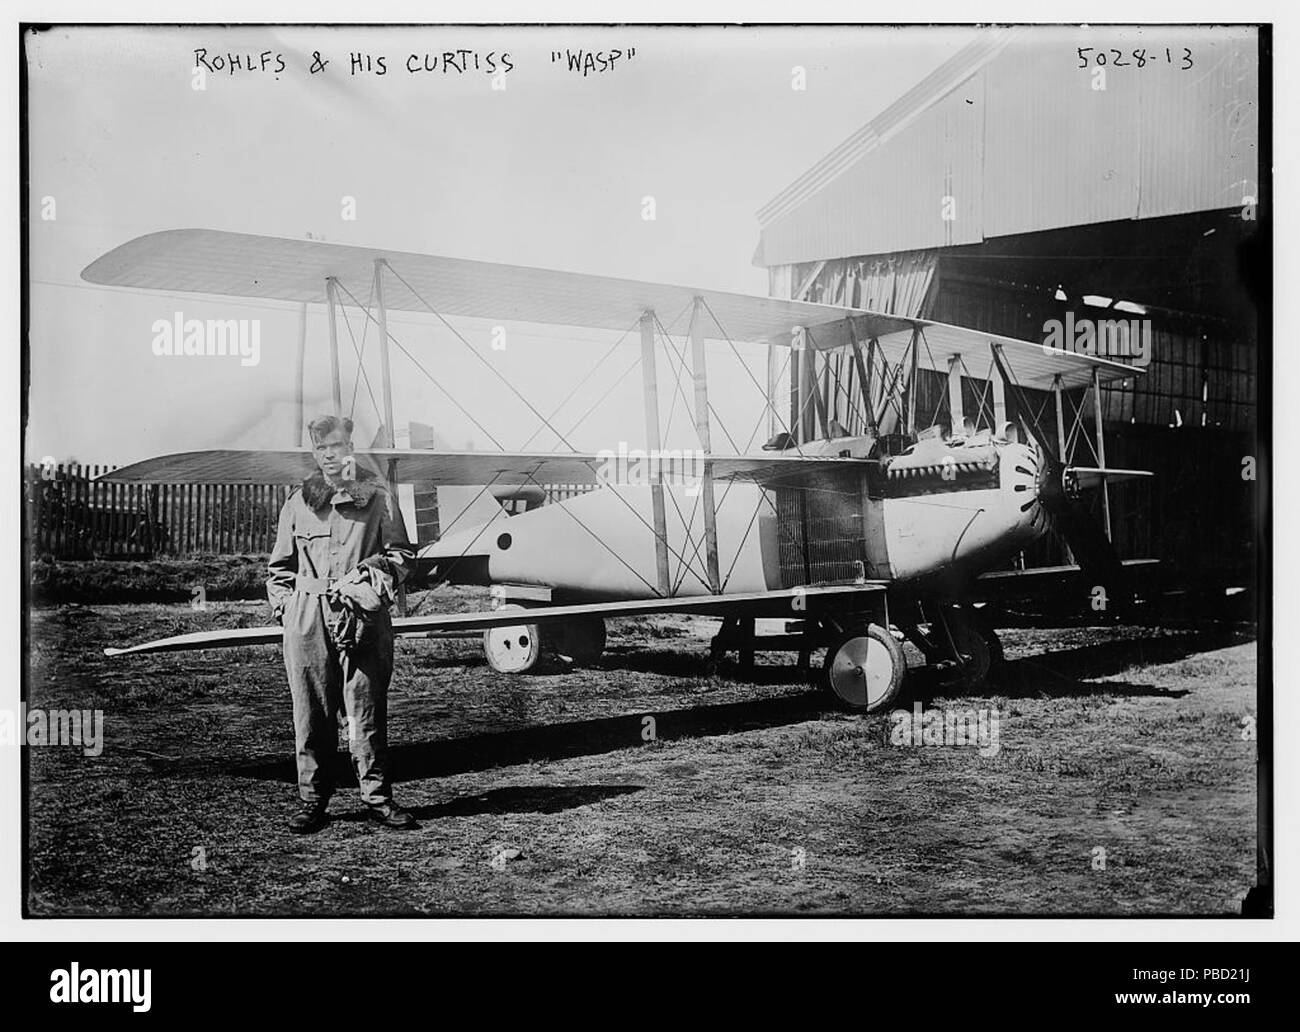 1267 Roland Rohlfs le 18 septembre 1919, à côté de la Curtiss 18T-2 Wasp, US Navy BuNo A-3325 dans laquelle il a établi un record d'altitude Banque D'Images